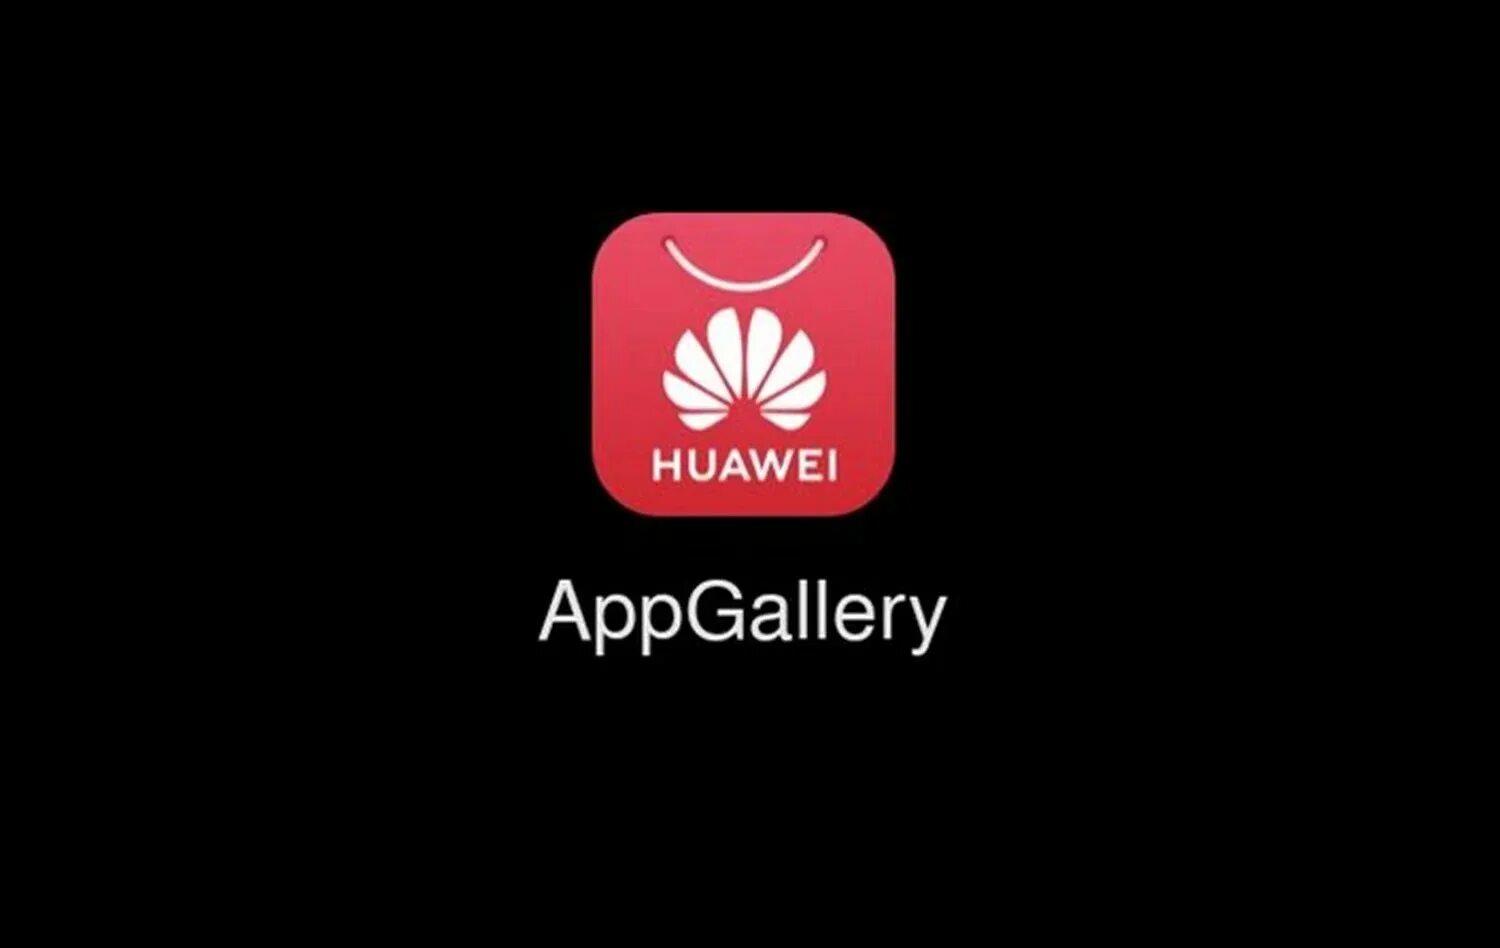 Хуавей маркет игры. Huawei app Gallery значок. Приложения Хуавей APPGALLERY. Апп галерея Хуавей. Huawei магазин приложений.